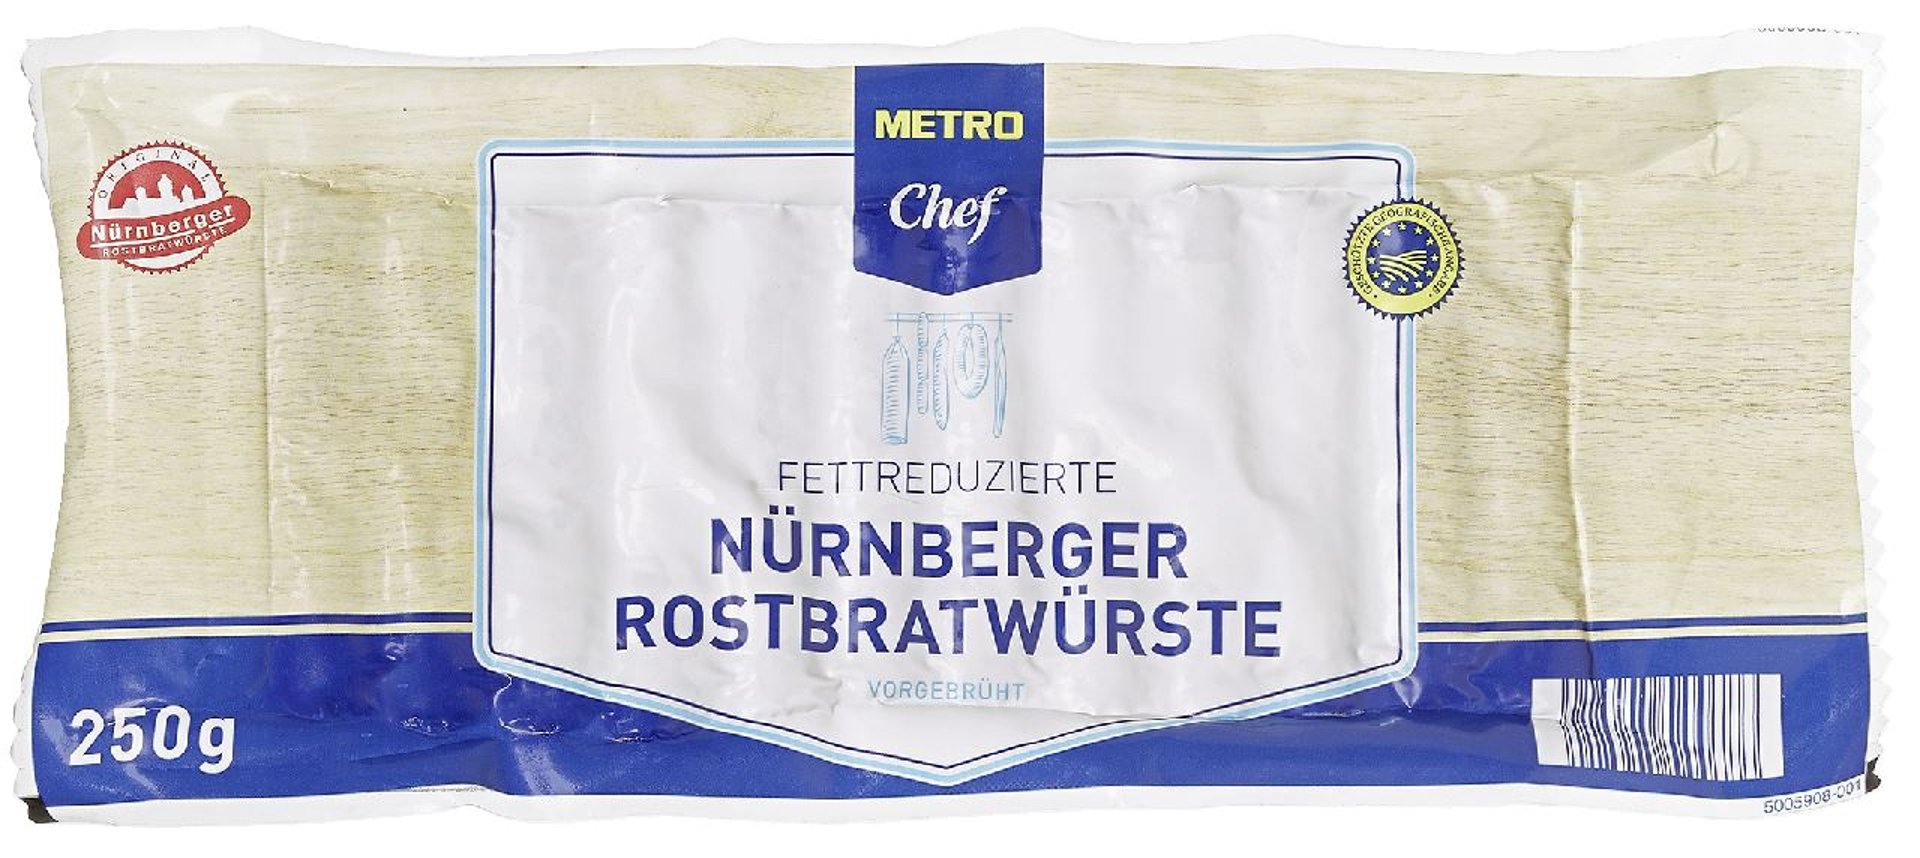 METRO Chef - Nürnberger Rostbratwurst Light - 250 g Packung